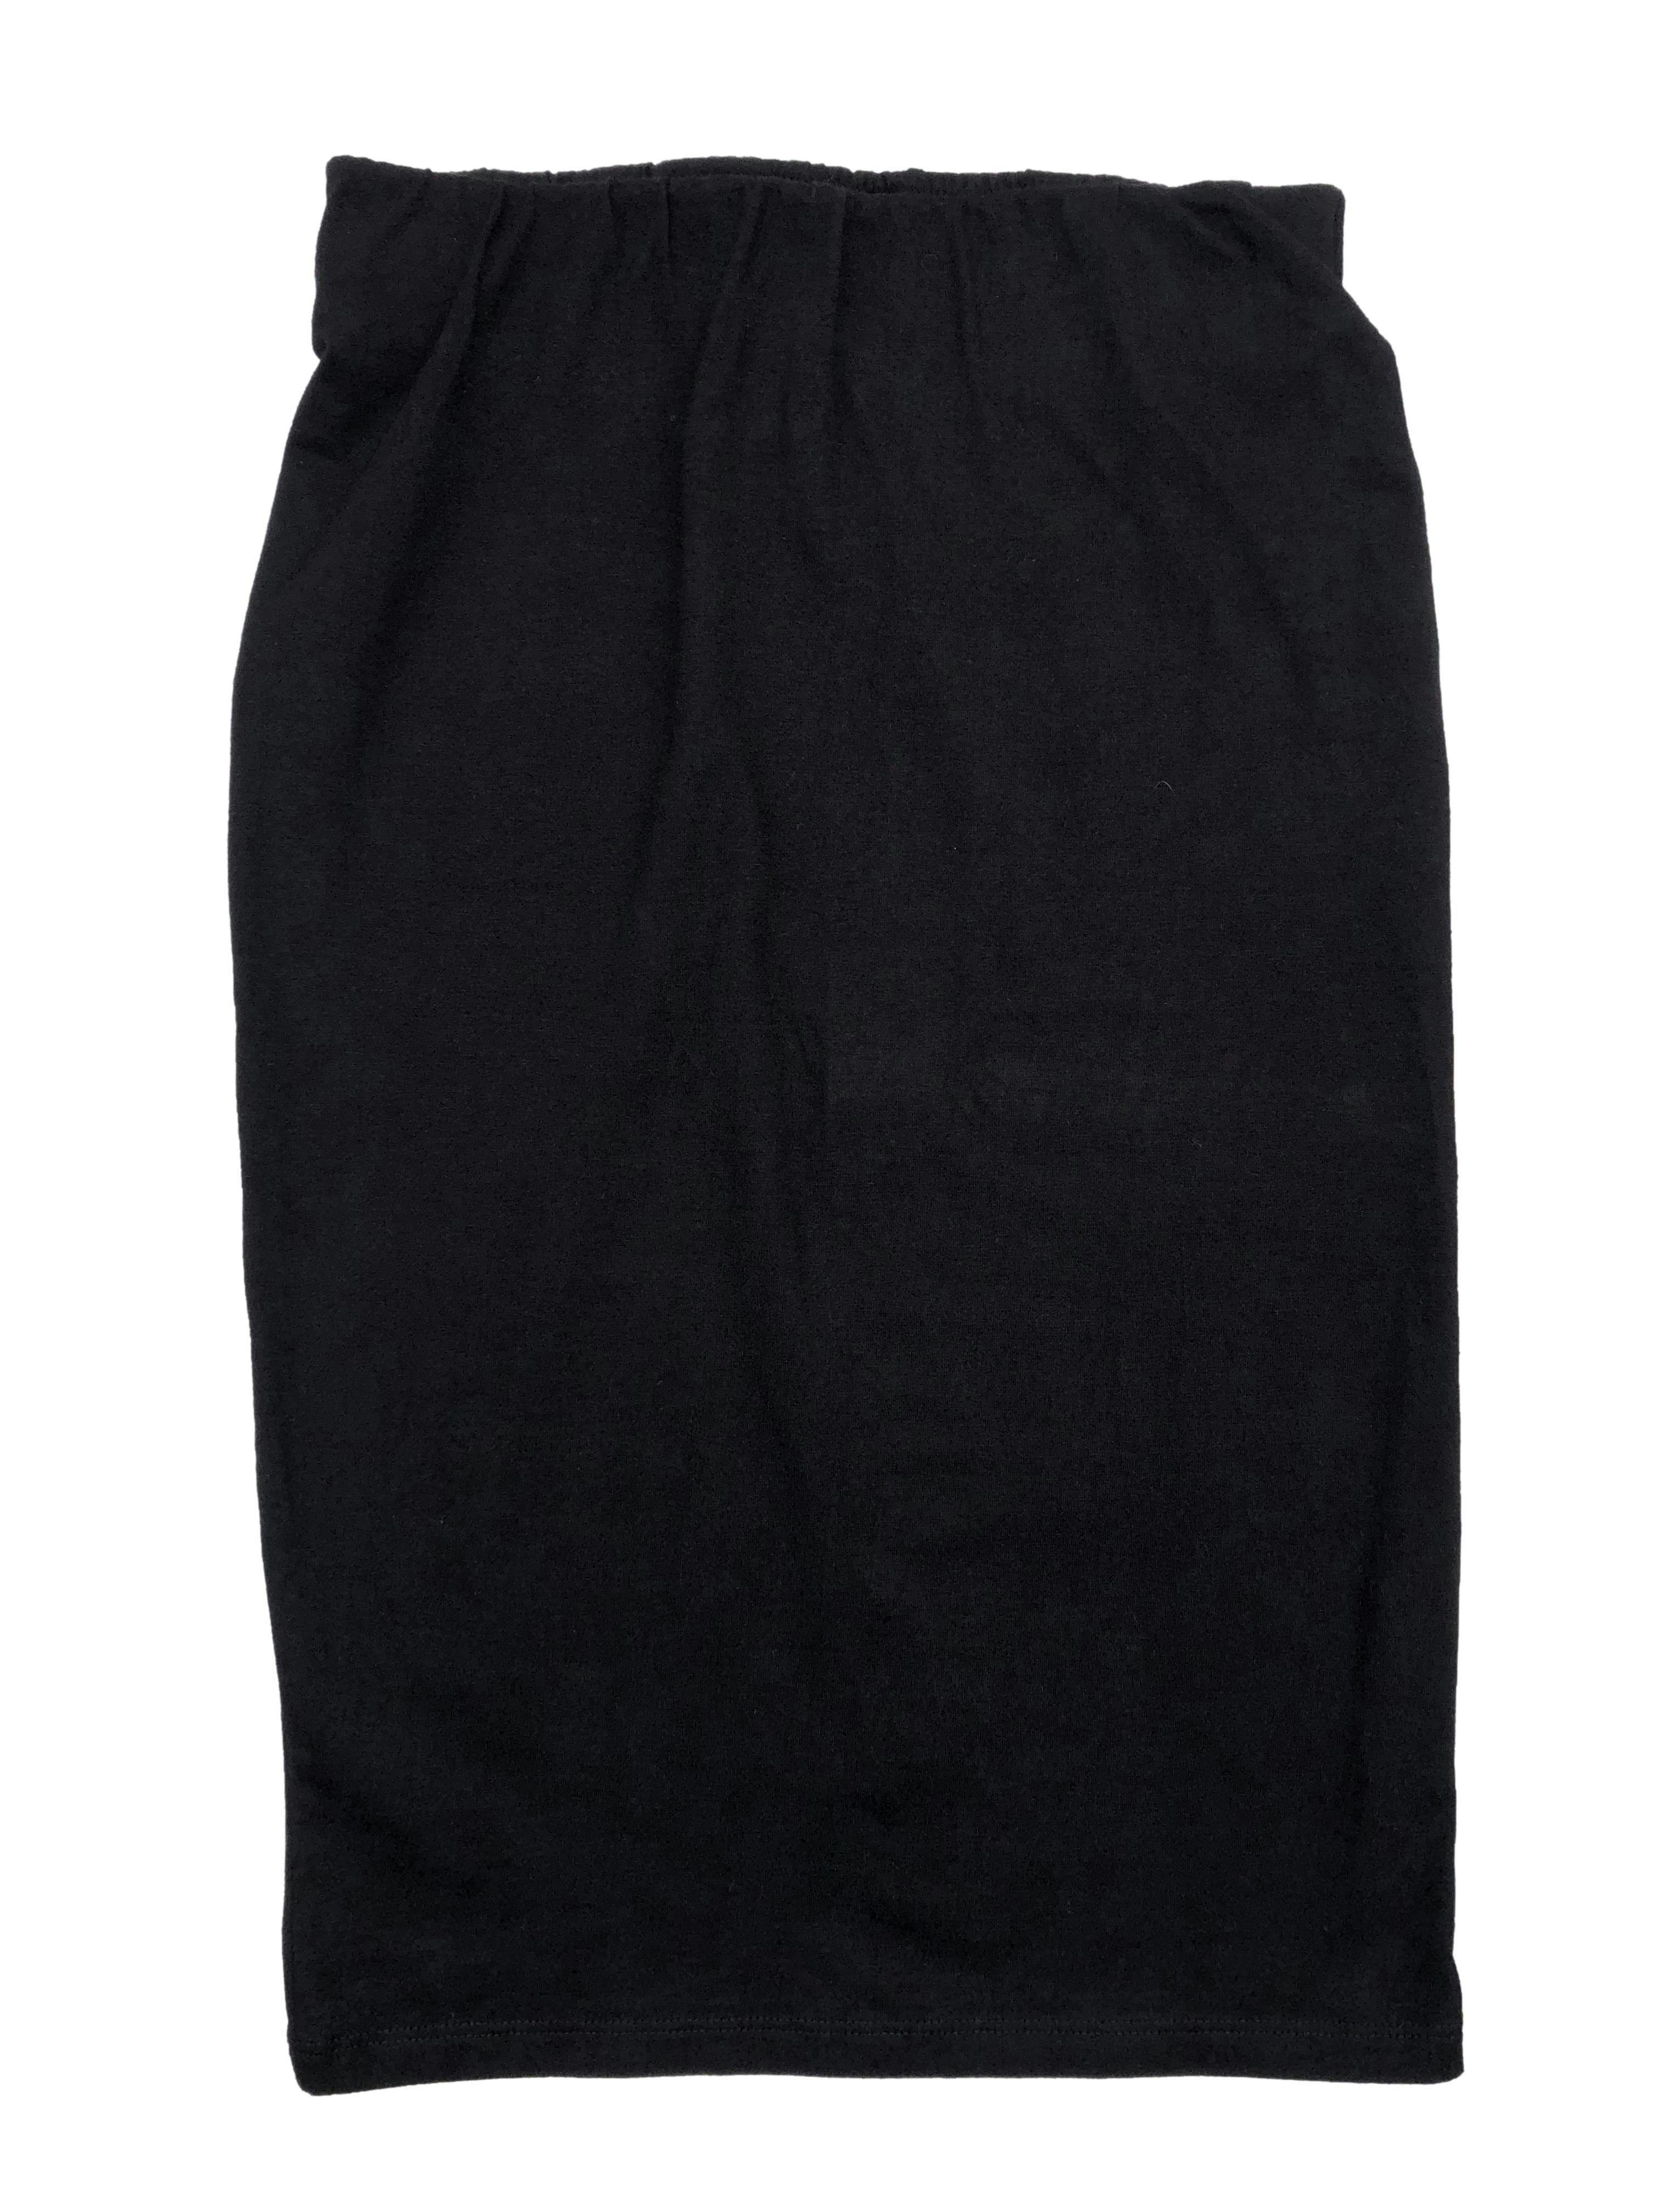 Falda tubo Exit 95% algodón, tela stretch, cintura elasticada. Cintura 62cm sin estirar, Largo 56cm.